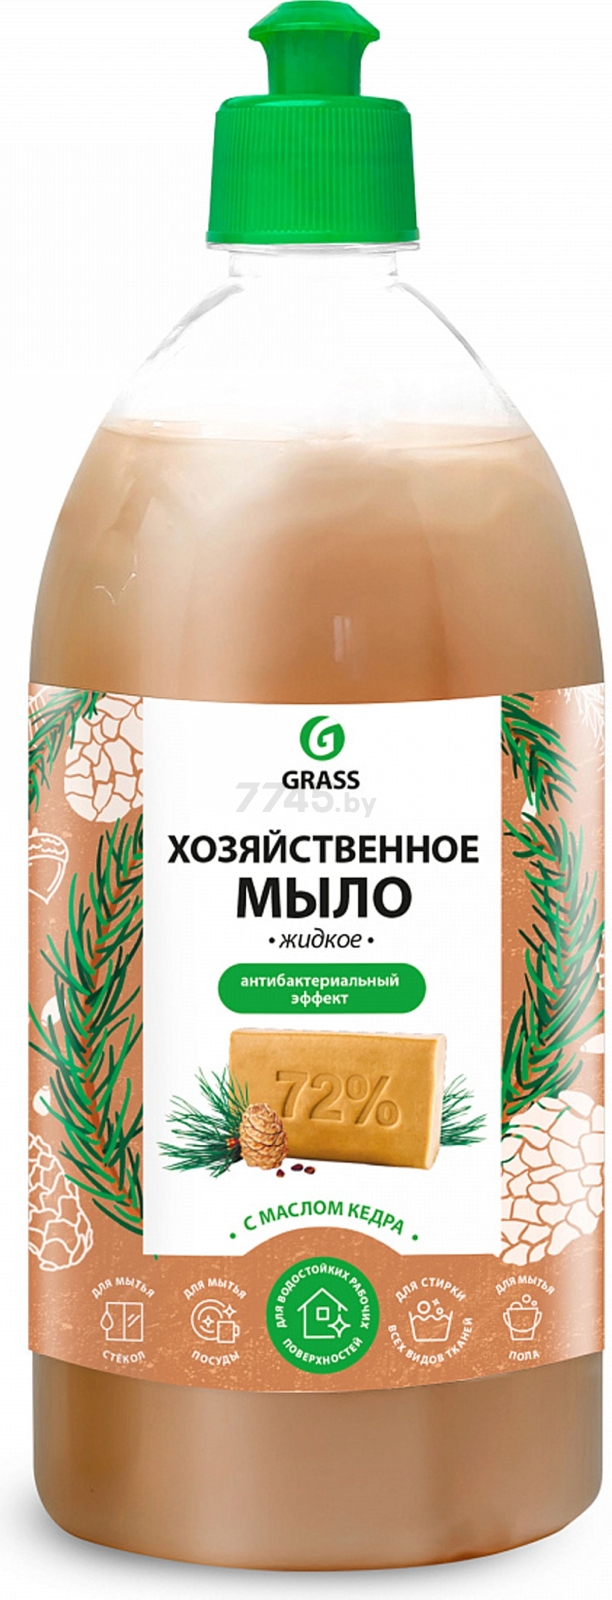 Мыло хозяйственное жидкое GRASS с маслом кедра 1 л (4630097260252)